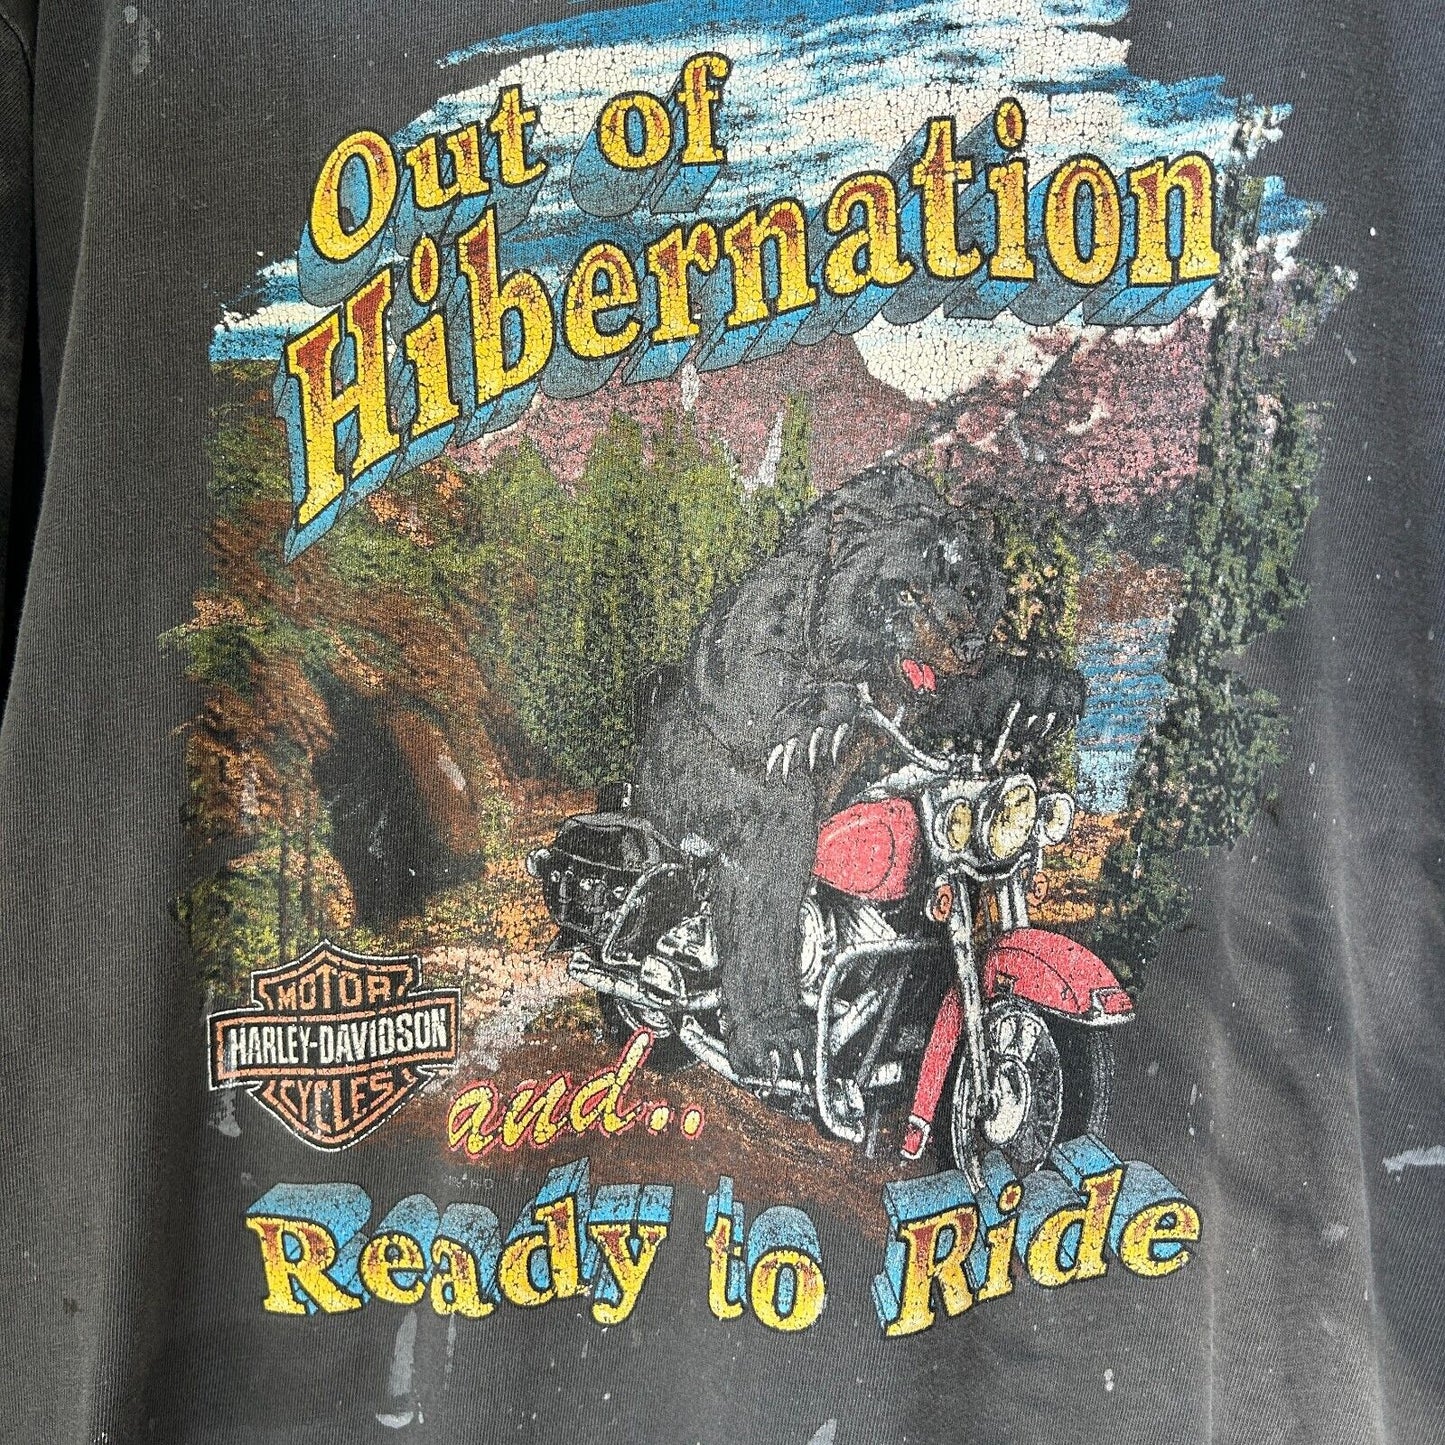 VINTAGE 90s | Harley Davidson Hibernation Biker Bear Thrashed T-Shirt sz L